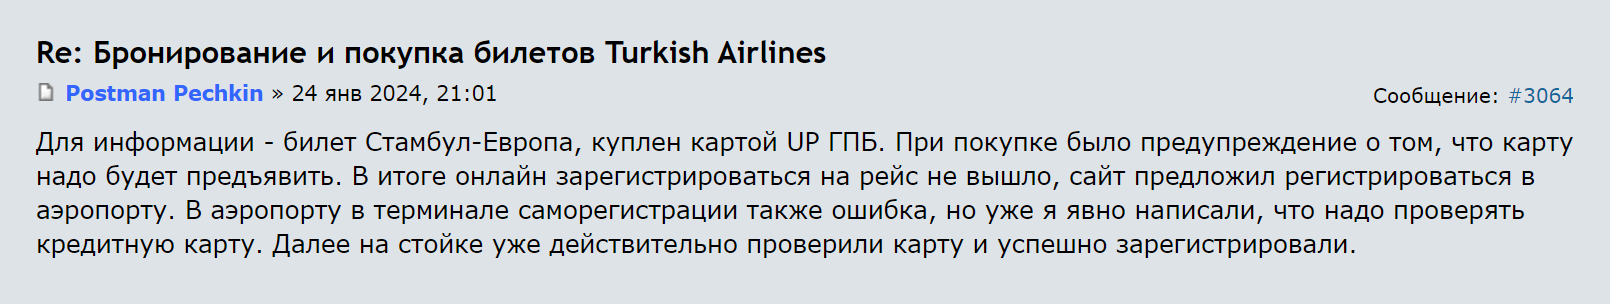 Другой пассажир рассказал, что его зарегистрировали на рейс после предъявления карты. Он оплачивал покупку картой UnionPay. Источник: forum.awd.ru